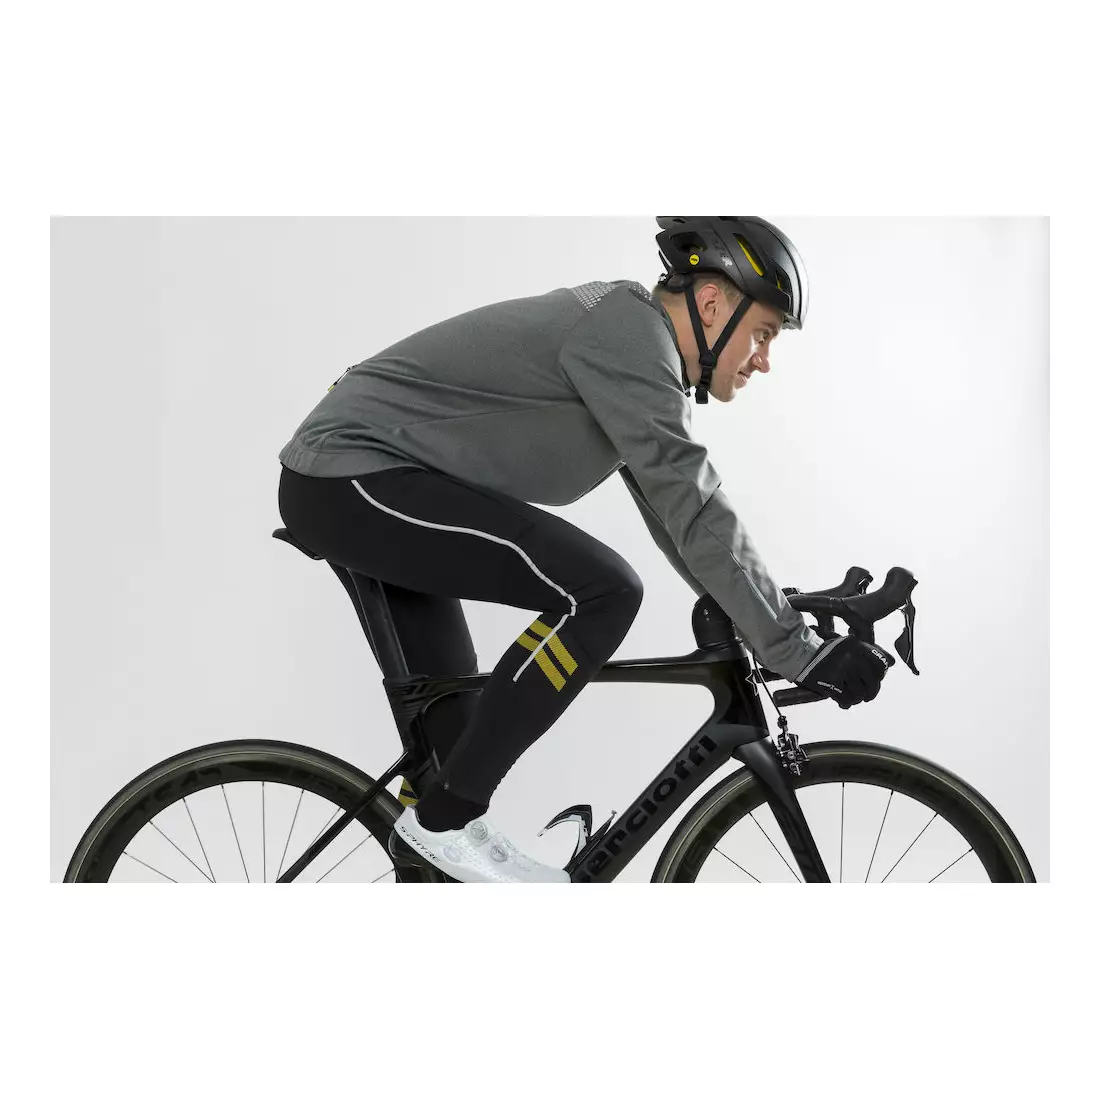 CRAFT RIME zimná cyklistická bunda, šedá 1905452-975926